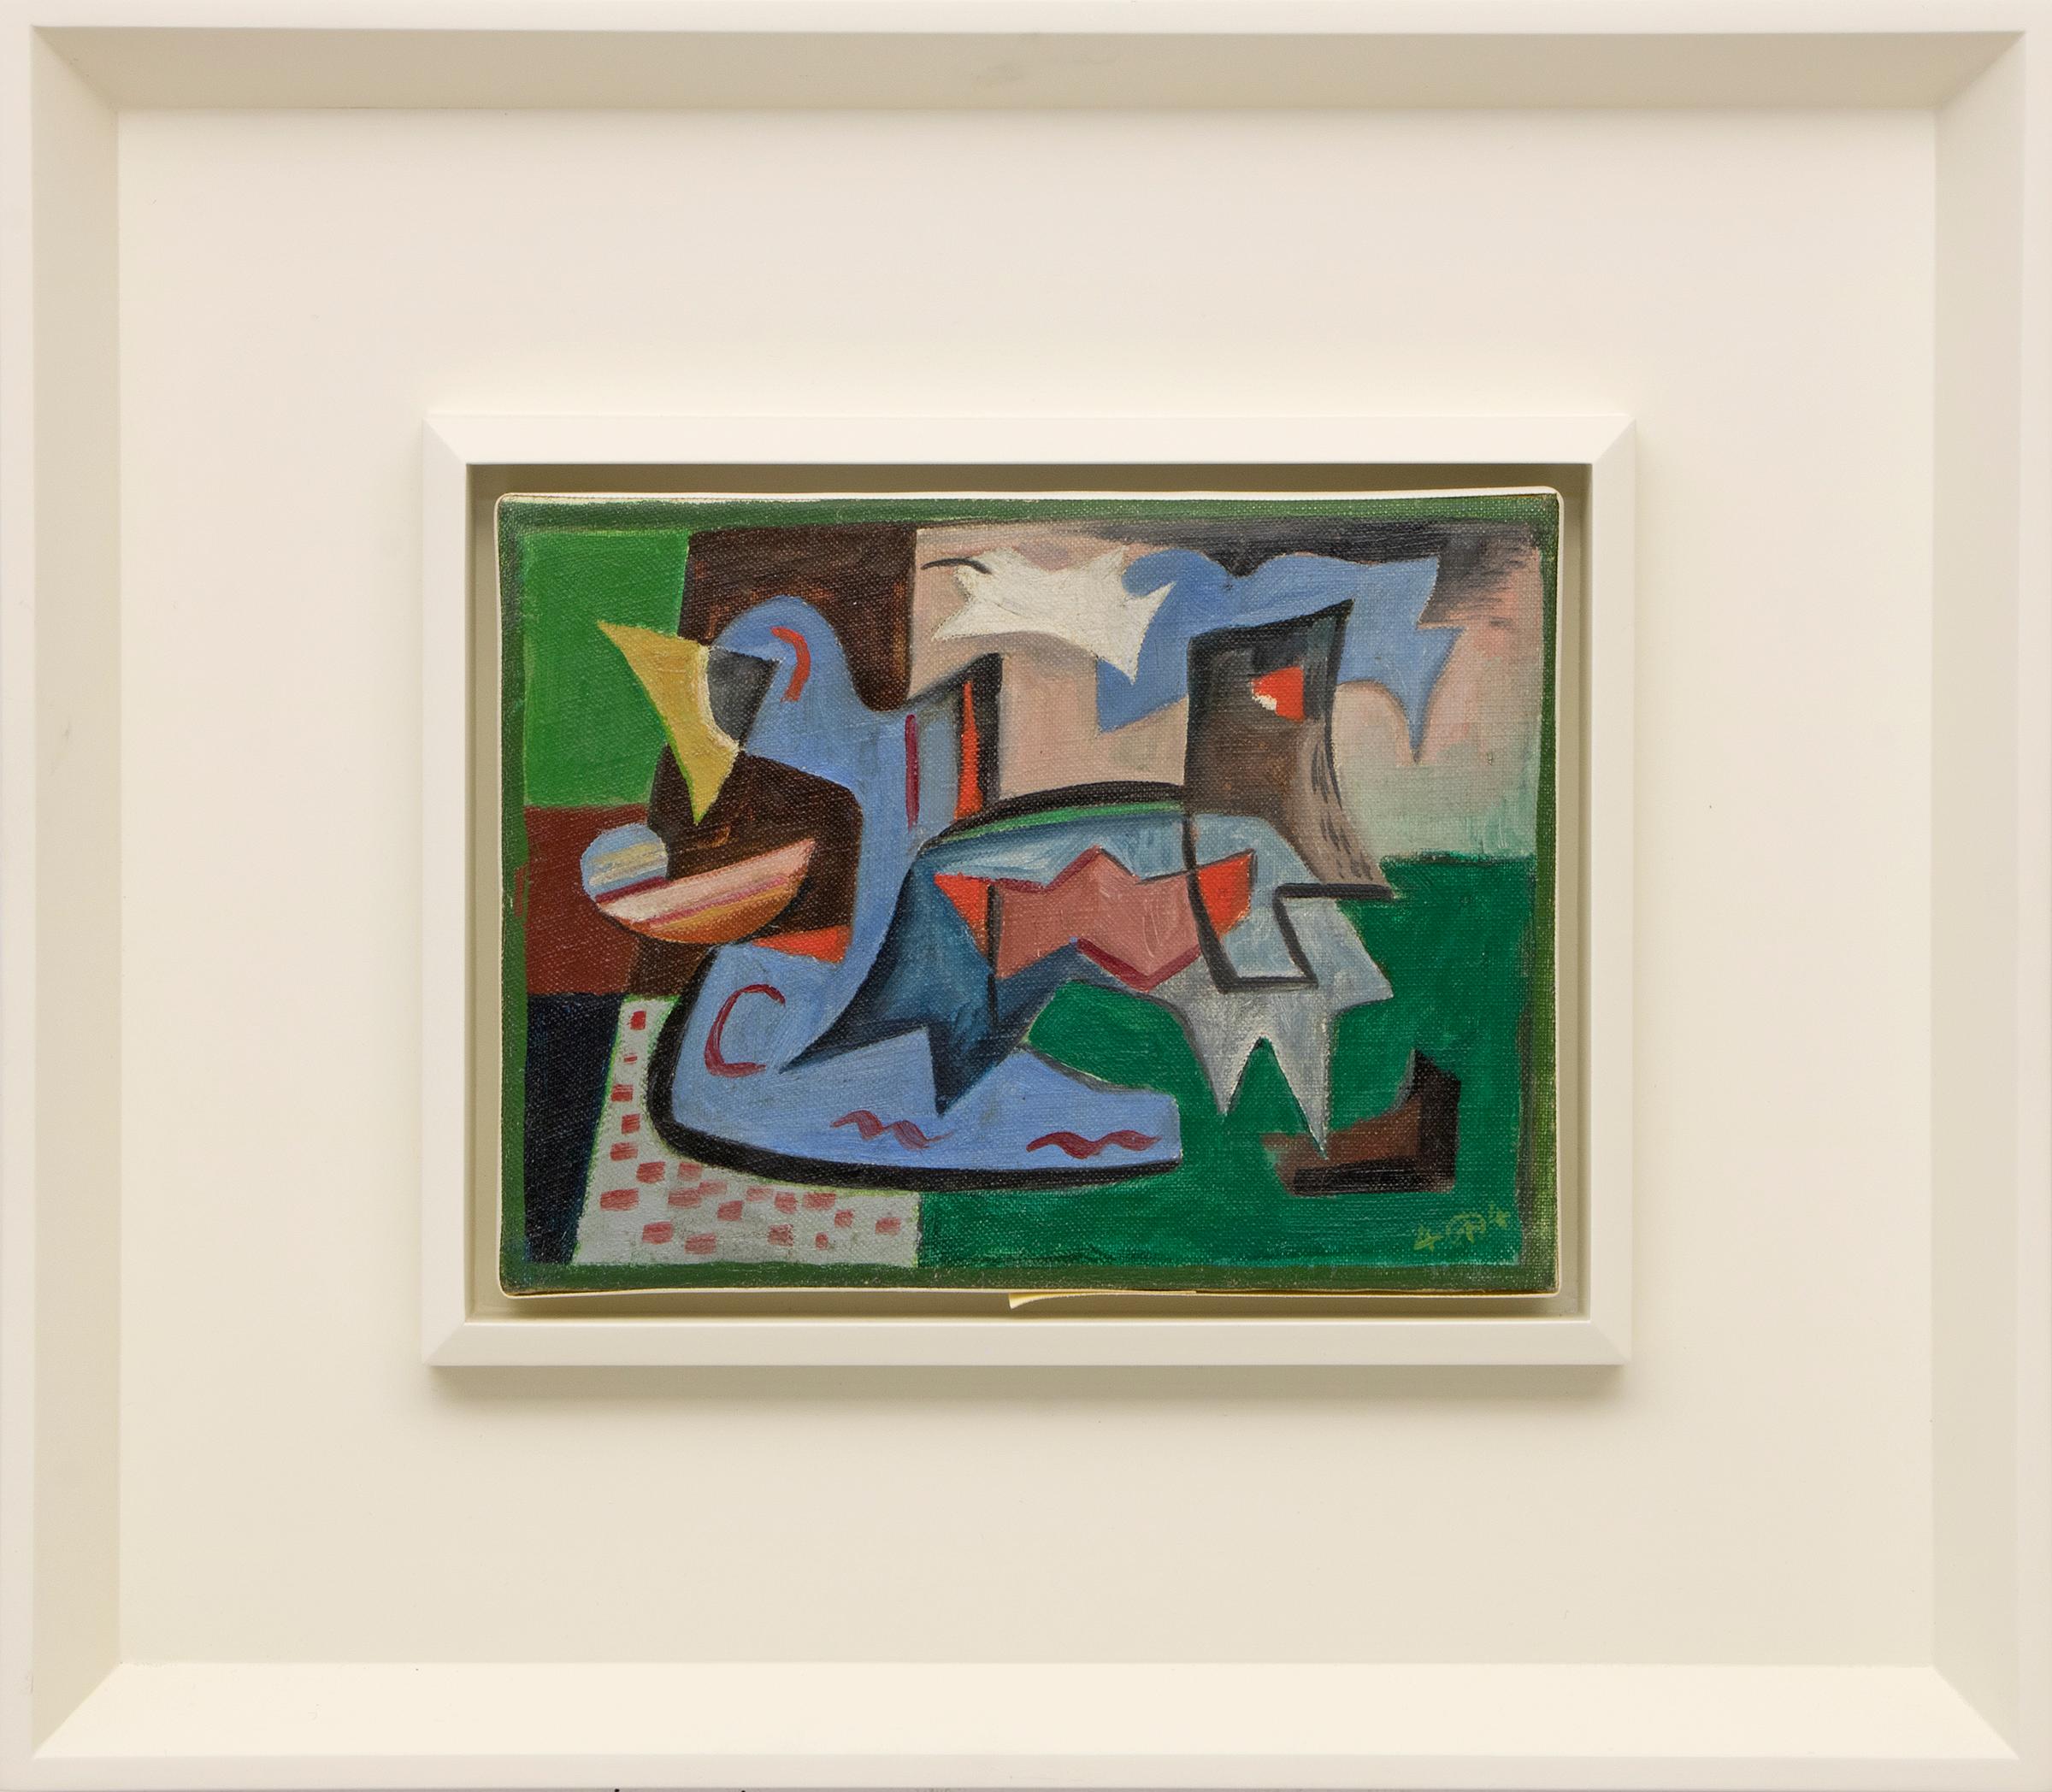 Abstraktes Ölgemälde auf Leinwand von Werner Drewes, gemalt in leuchtenden Grün-, Blau- und Rottönen aus dem Jahr 1944. Signiert vom Künstler in der rechten unteren Ecke der Leinwand. Das Bild wird in einem weißen Rahmen präsentiert, die Außenmaße